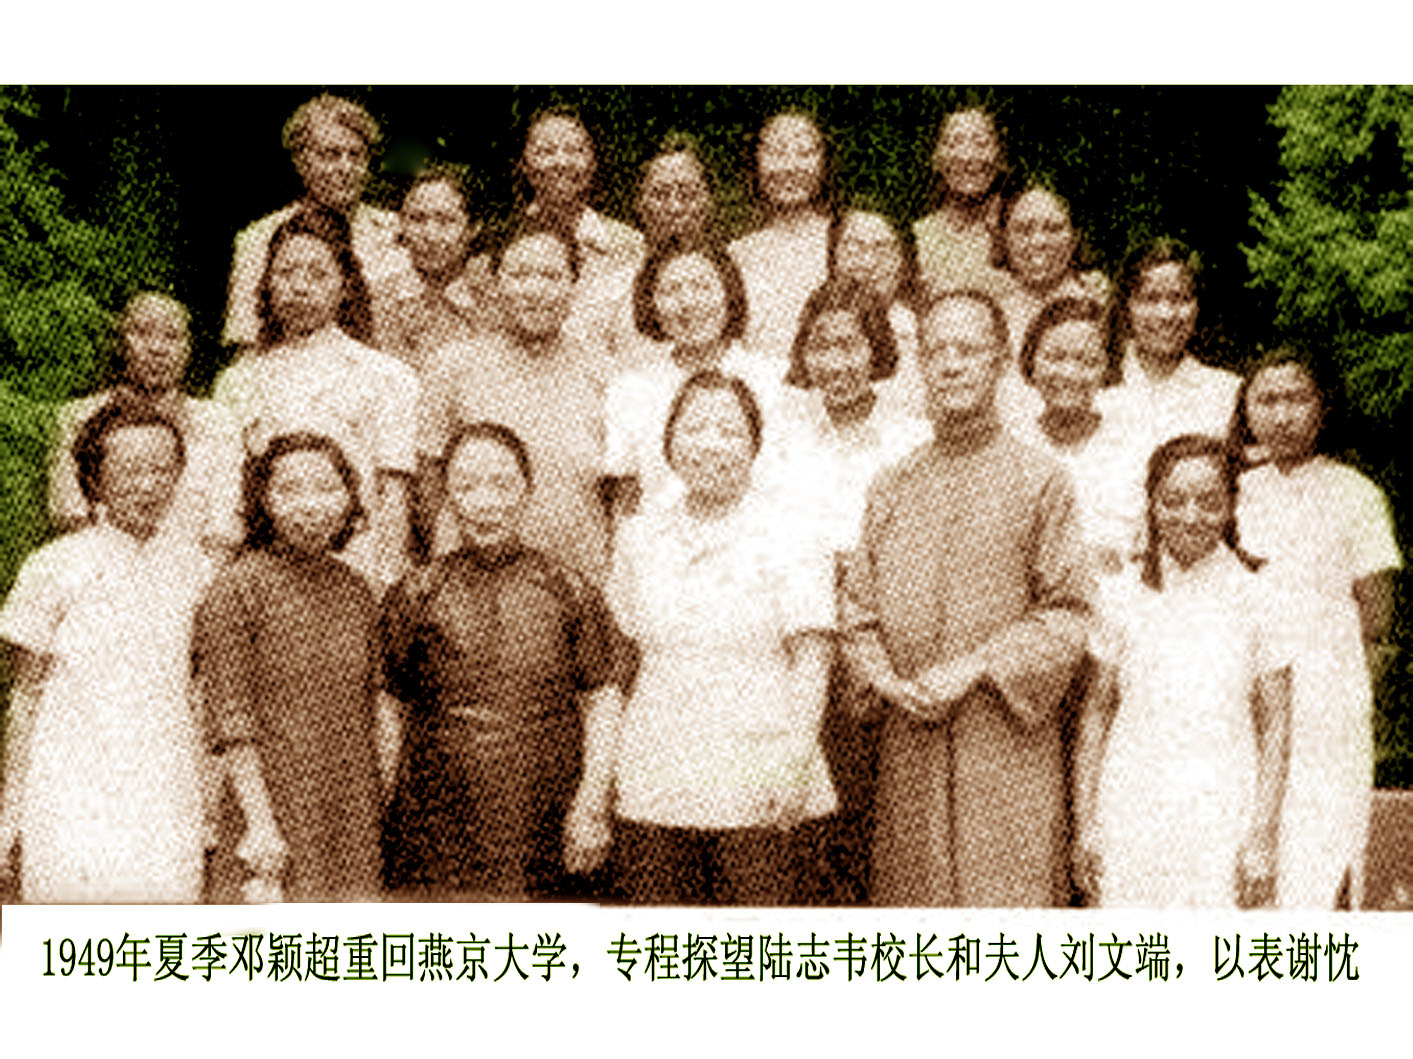 49年鄧穎超專程探望陸志韋和夫人劉文端